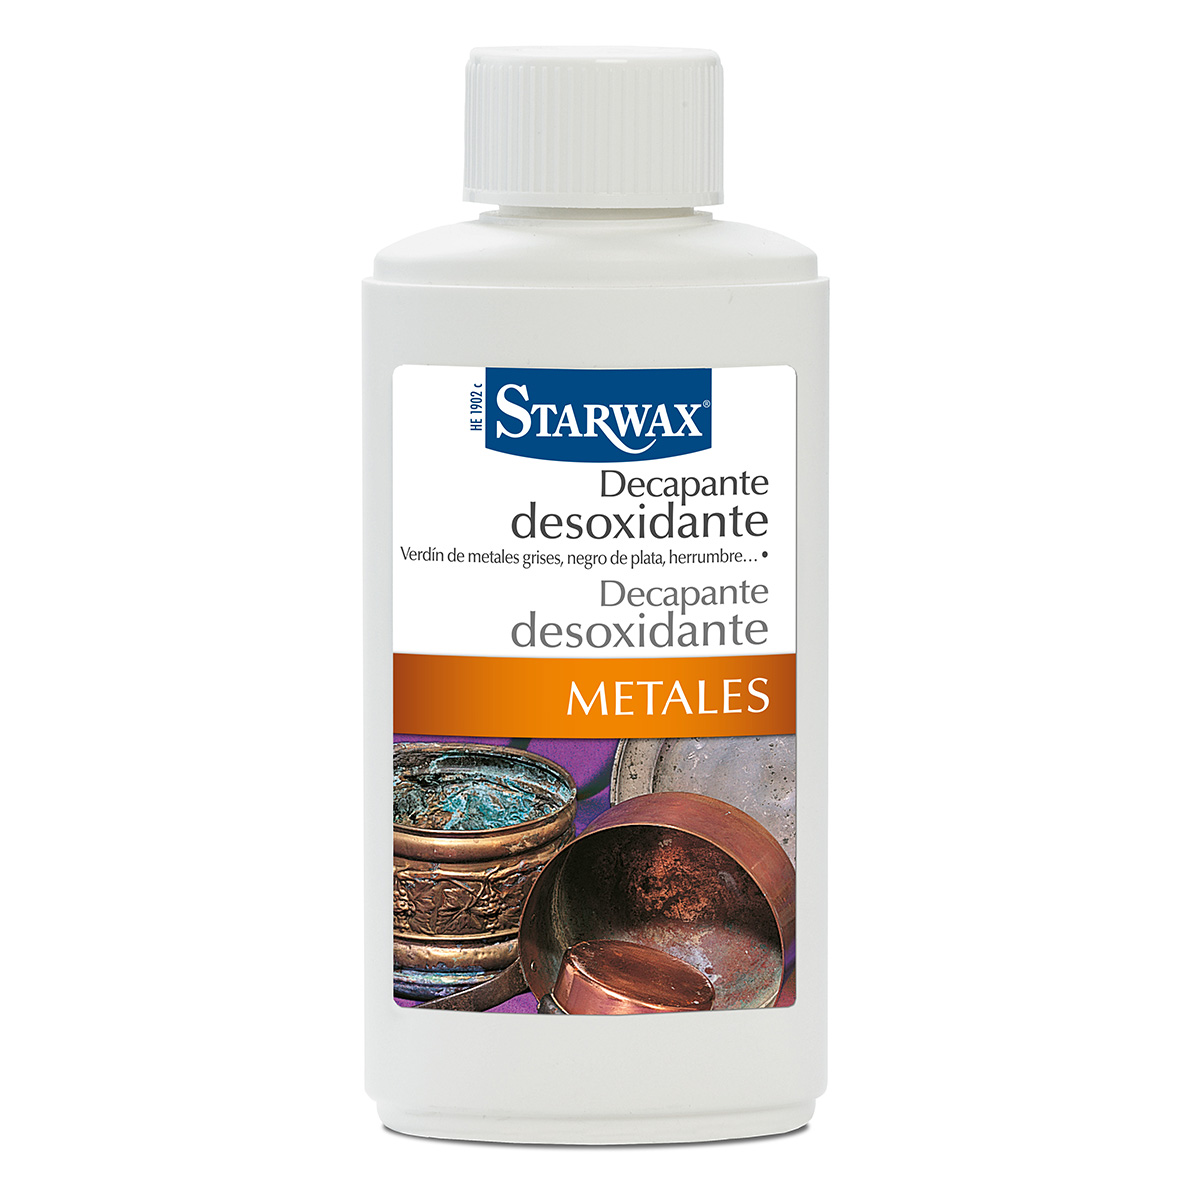 Decapante desoxidante metales – Starwax